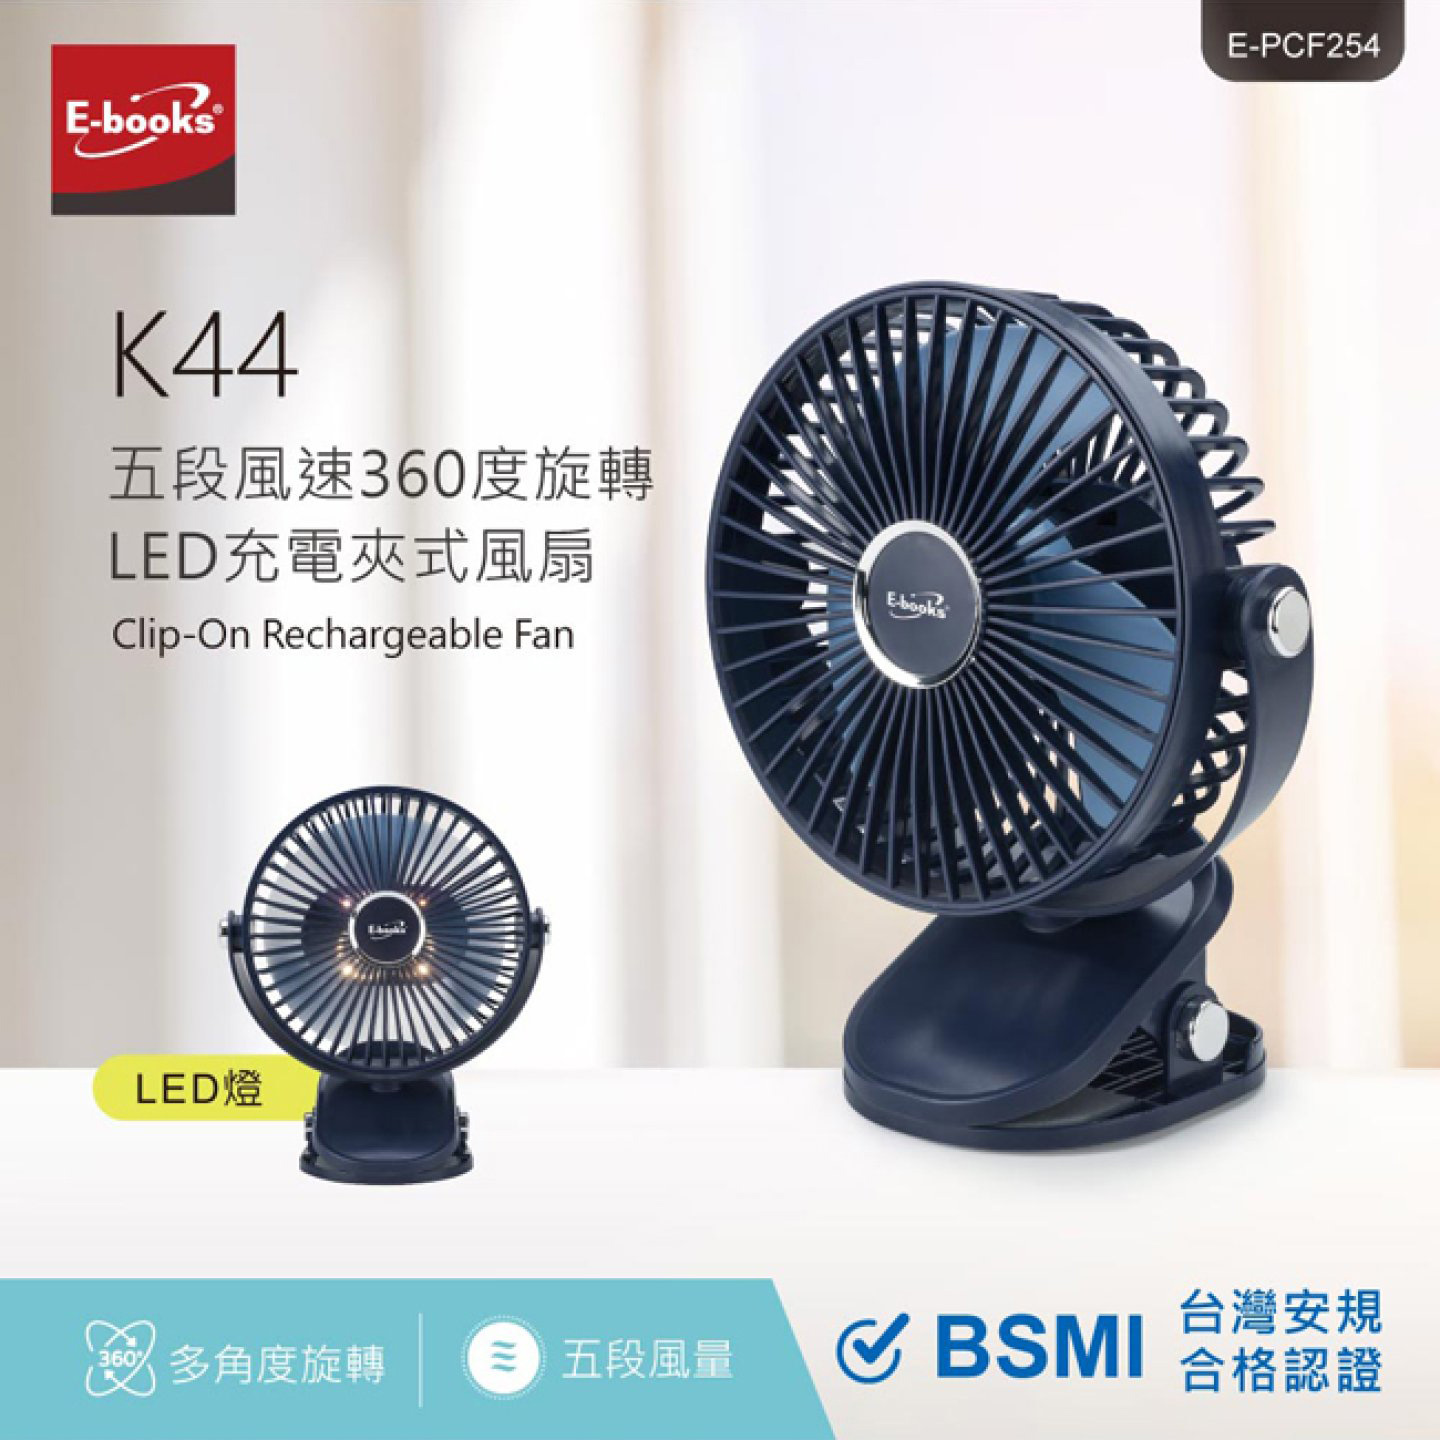 【E-books】K44 360度充電夾式風扇